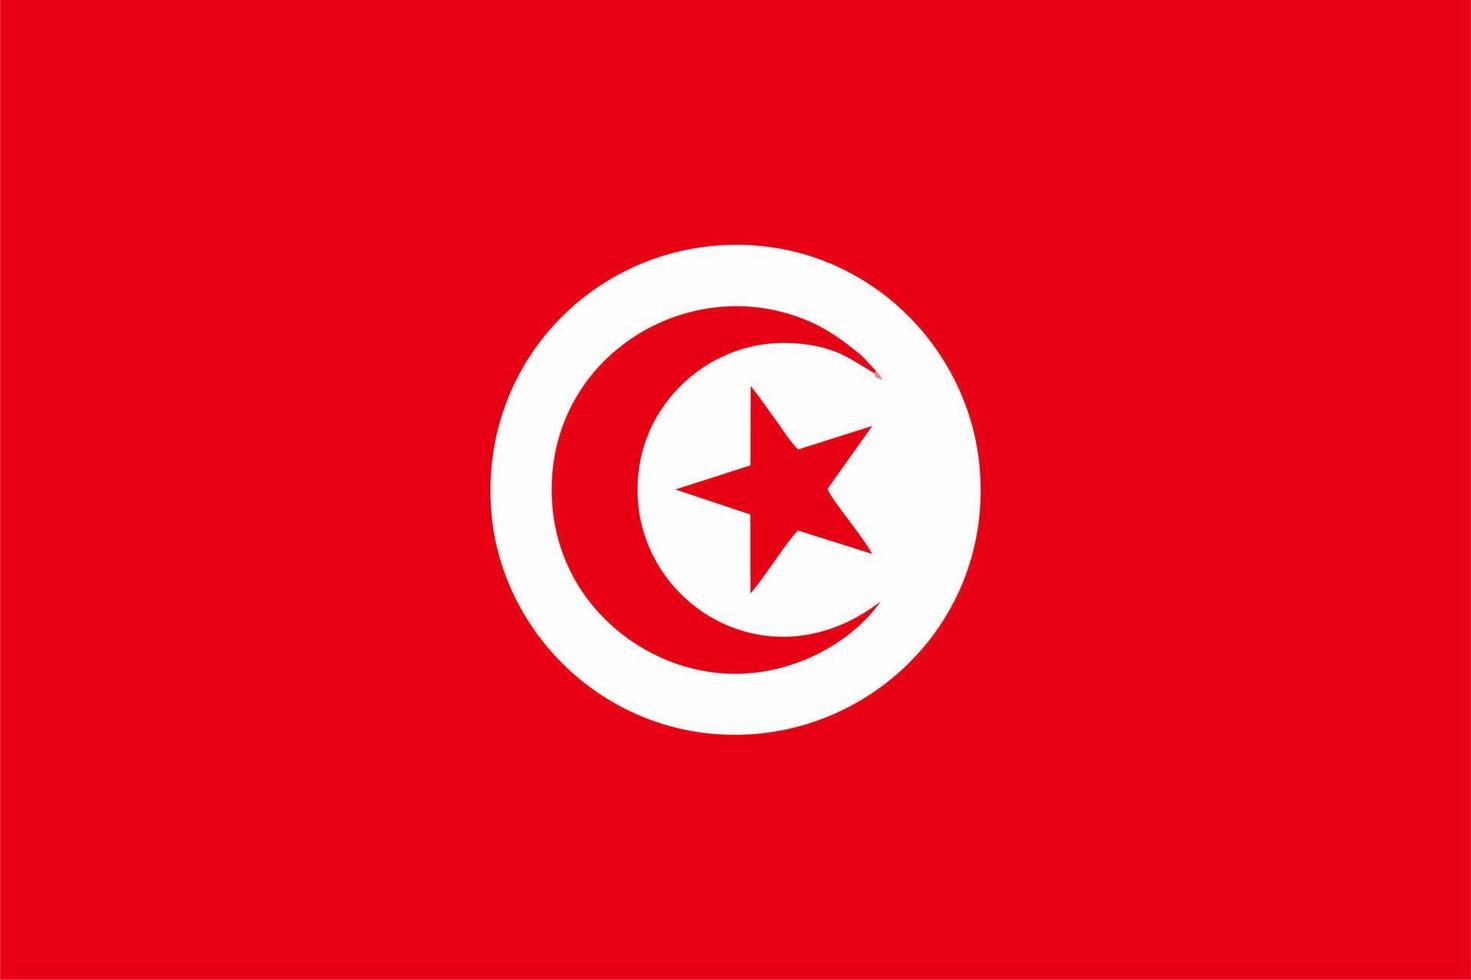 bandiera della tunisia, illustrazione vettoriale della bandiera della tunisia